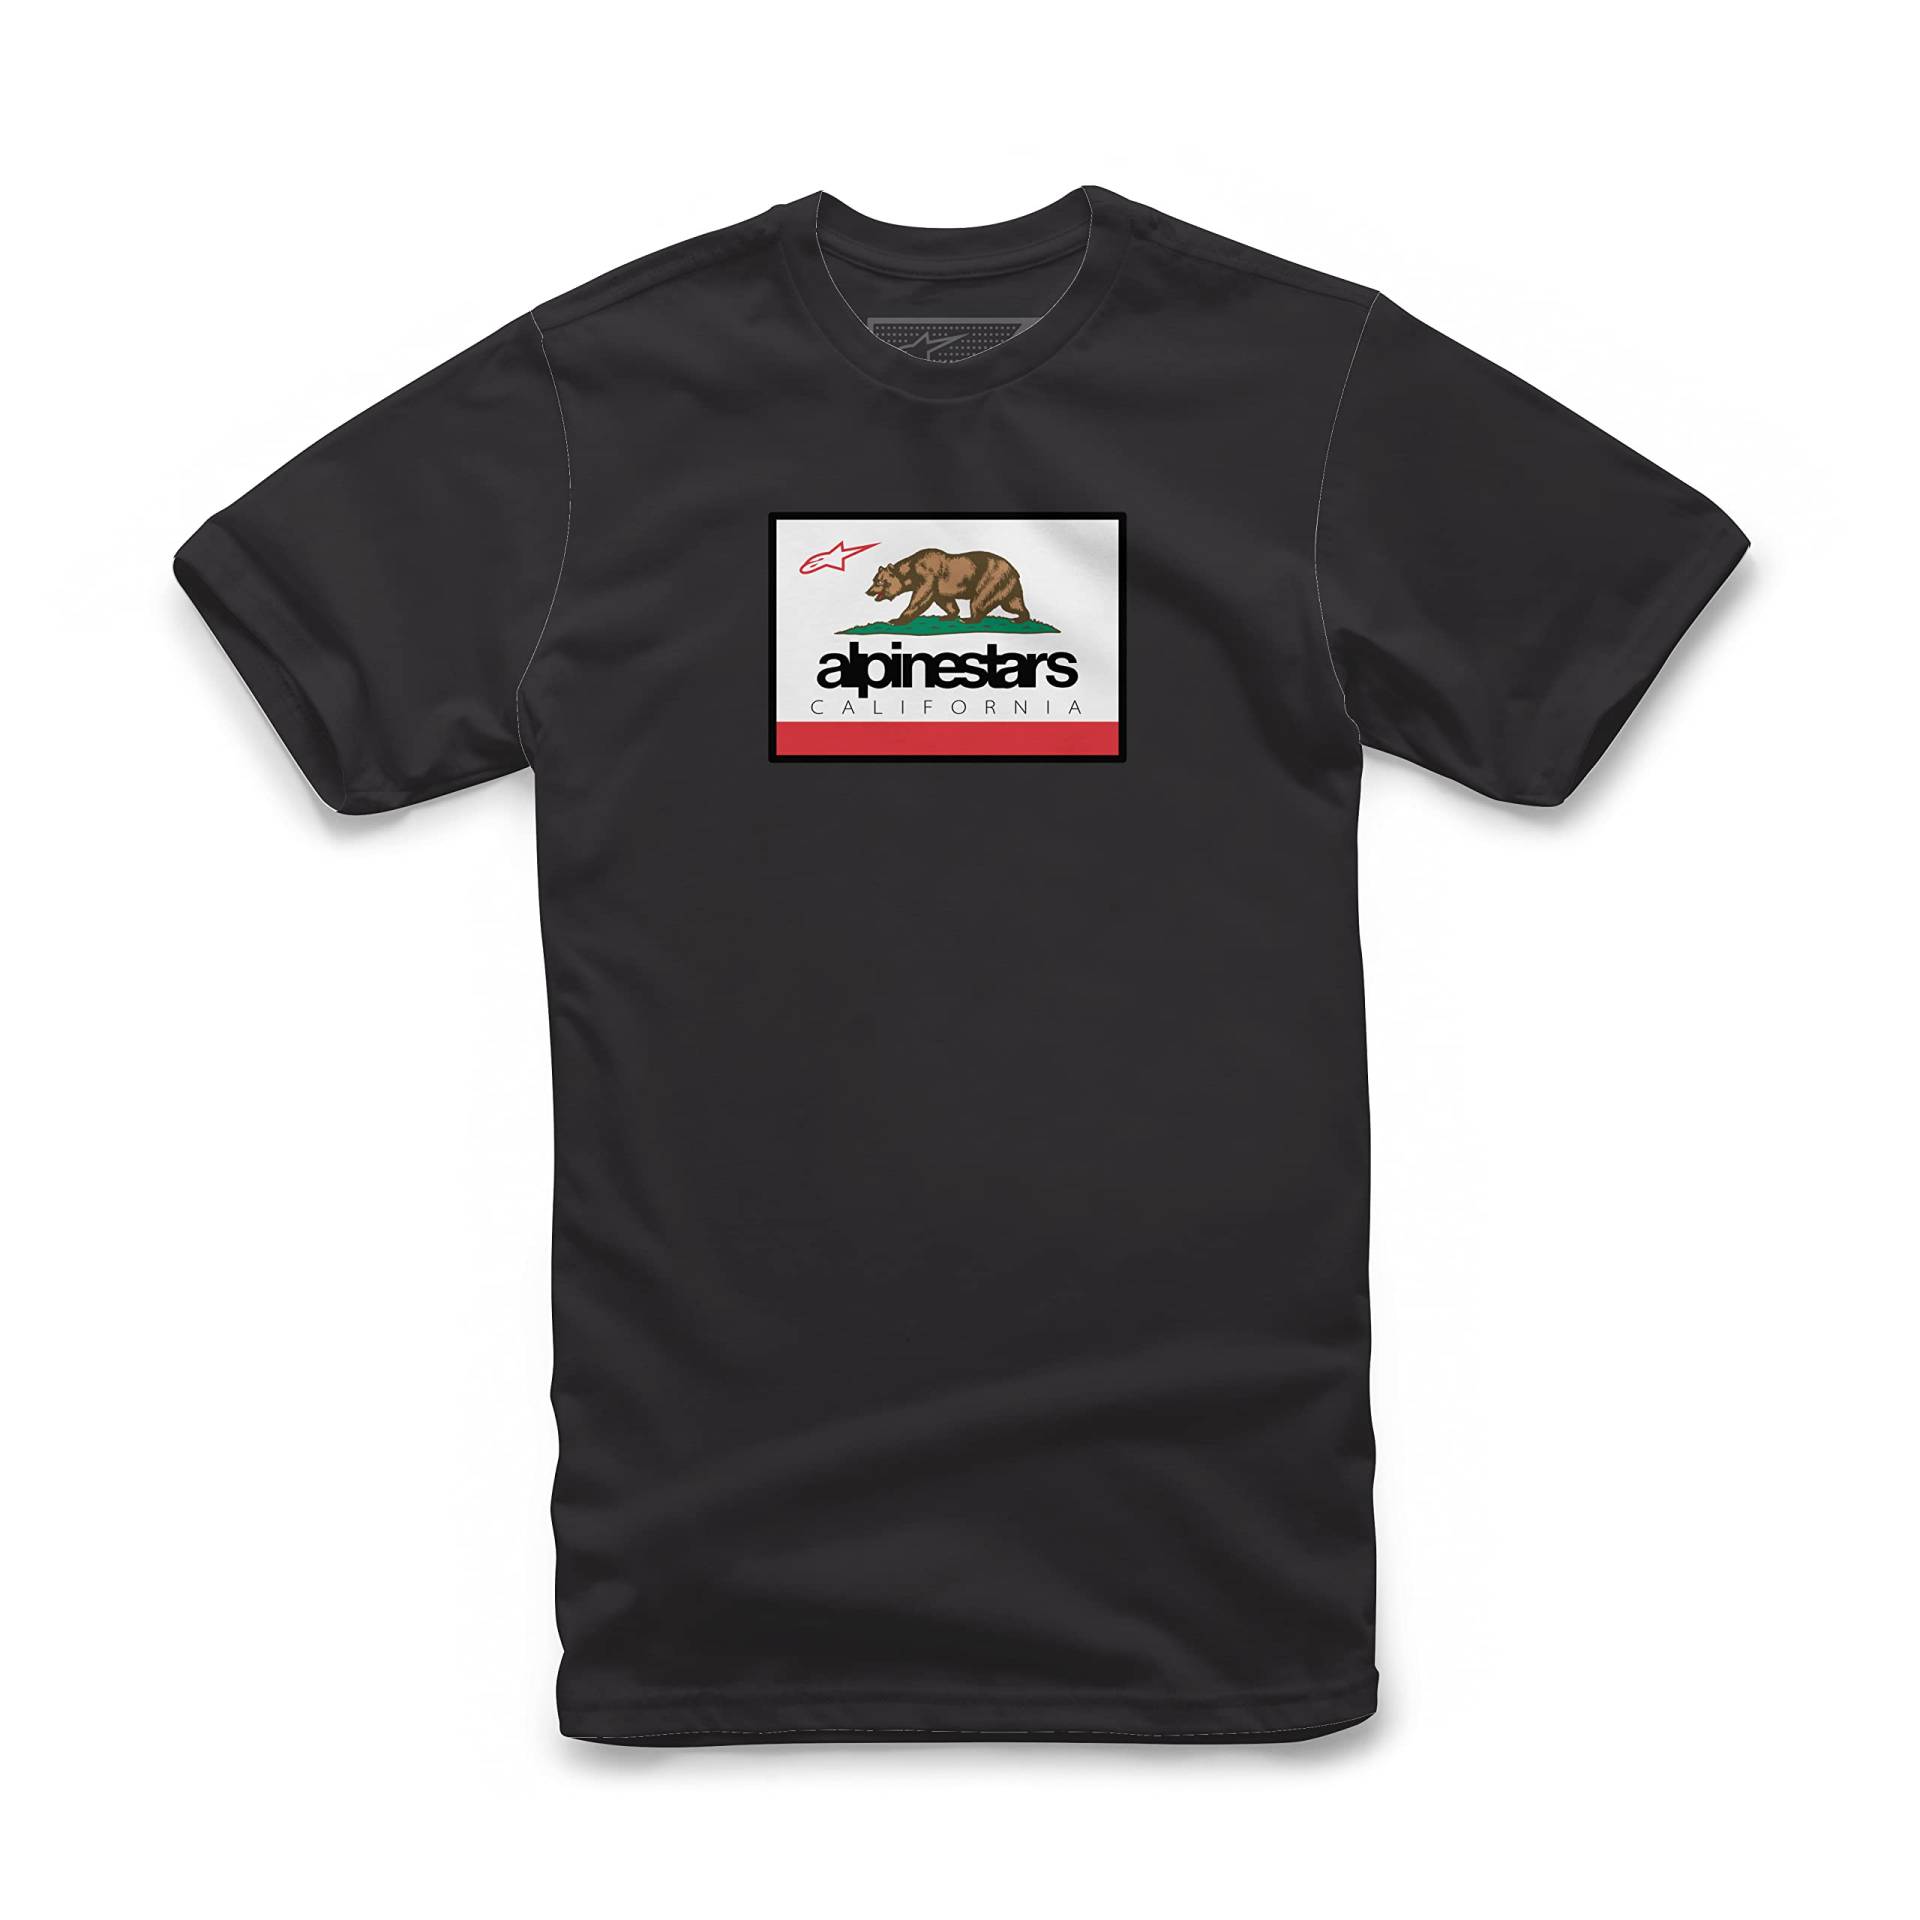 Alpinestars Cali 2.0 Tee - T-Shirt für Herren und Damen - Erhältlich in vielen Sportlicher Kurzarm-Shirt von Alpinestars